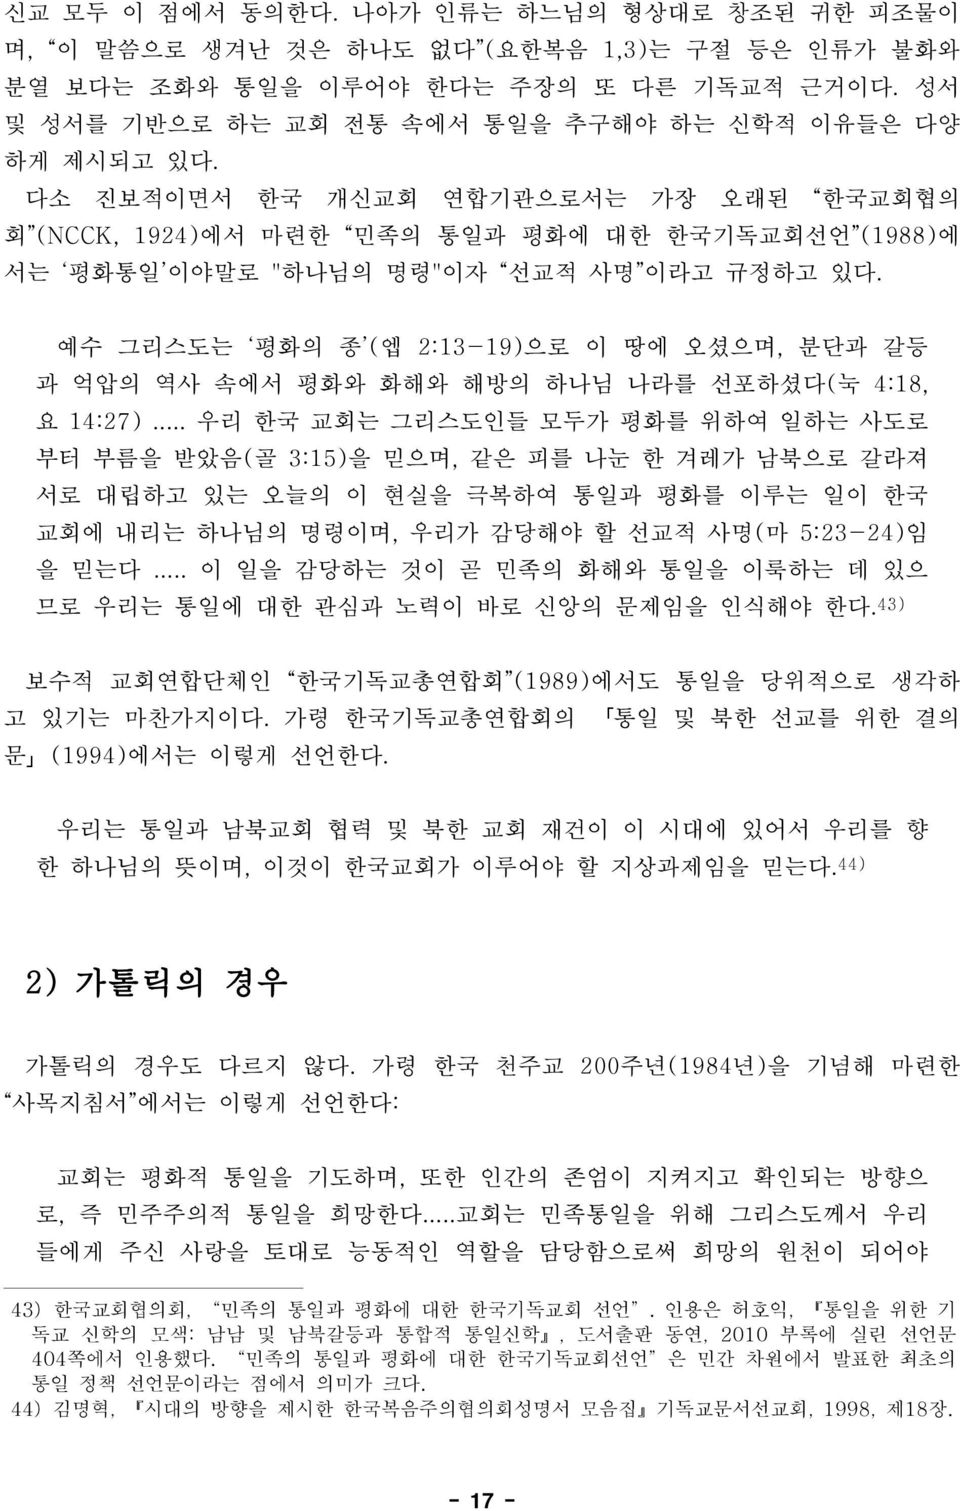 다소 진보적이면서 한국 개신교회 연합기관으로서는 가장 오래된 한국교회협의 회 (NCCK, 1924)에서 마련한 민족의 통일과 평화에 대한 한국기독교회선언 (1988)에 서는 평화통일 이야말로 "하나님의 명령"이자 선교적 사명 이라고 규정하고 있다.